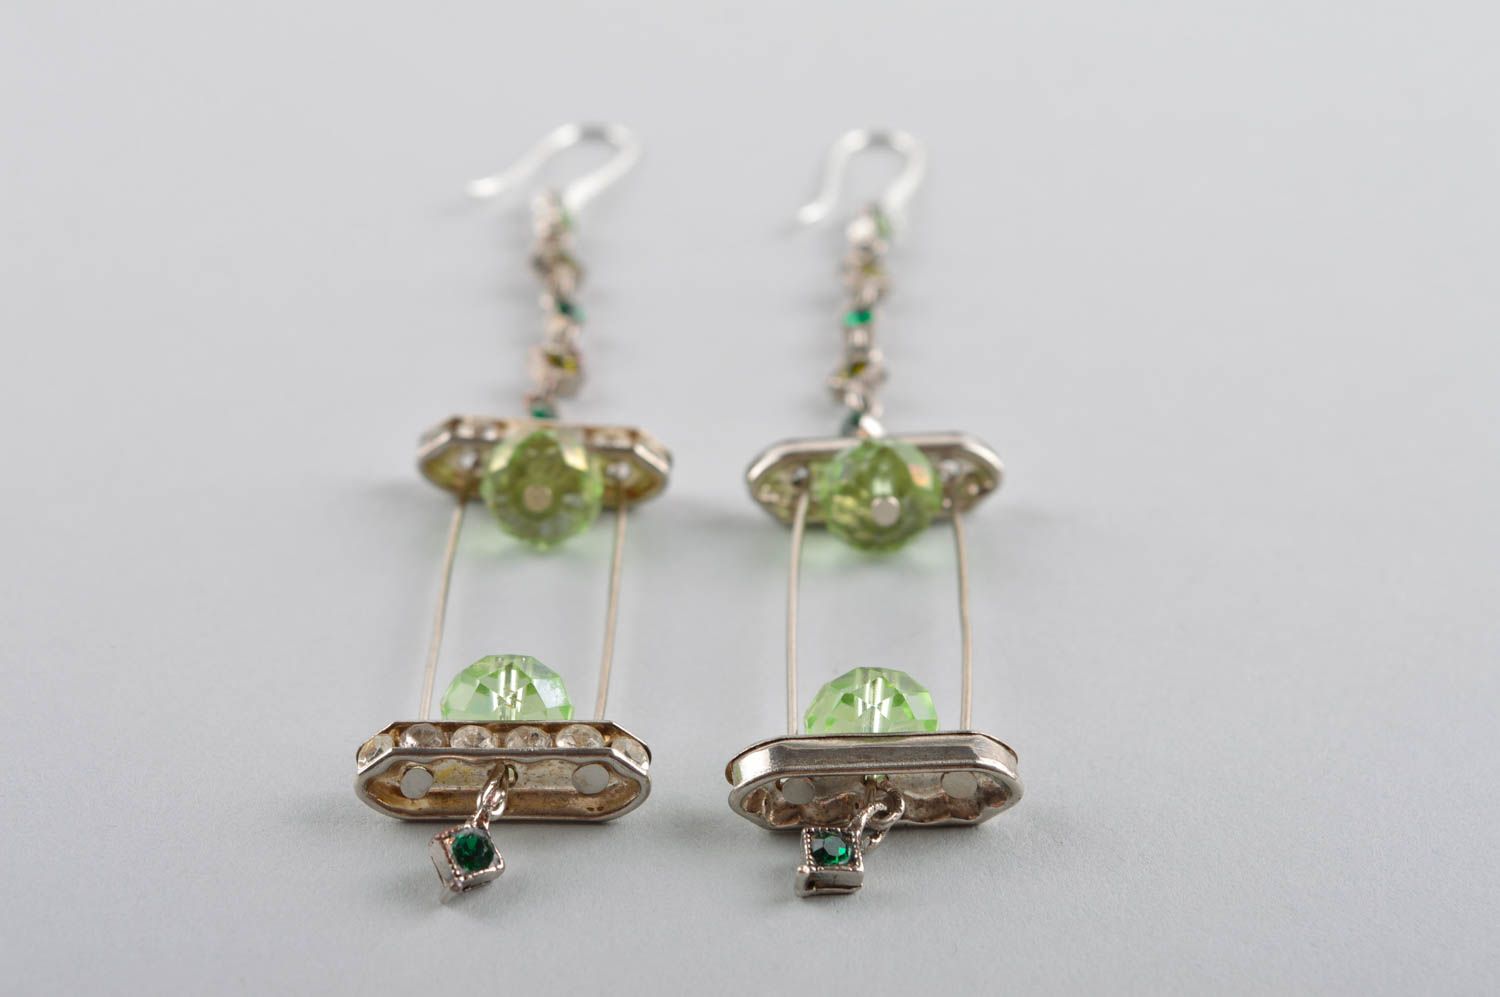 Handmade earrings fashion jewelry dangling earrings best gifts for women photo 4